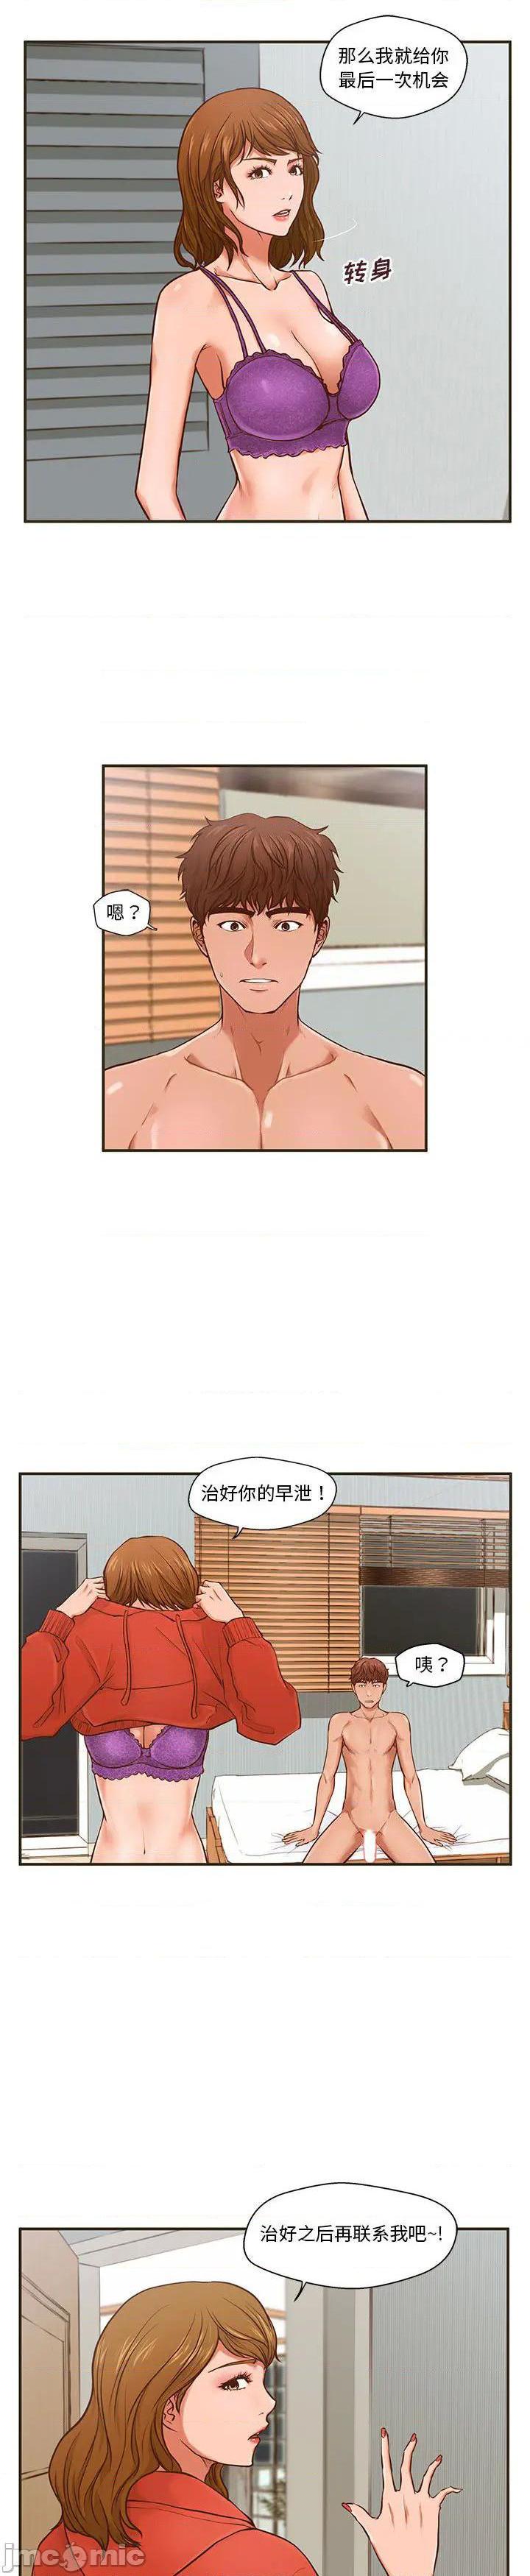 《诚徵女房客(甜蜜合租)》漫画 第1话